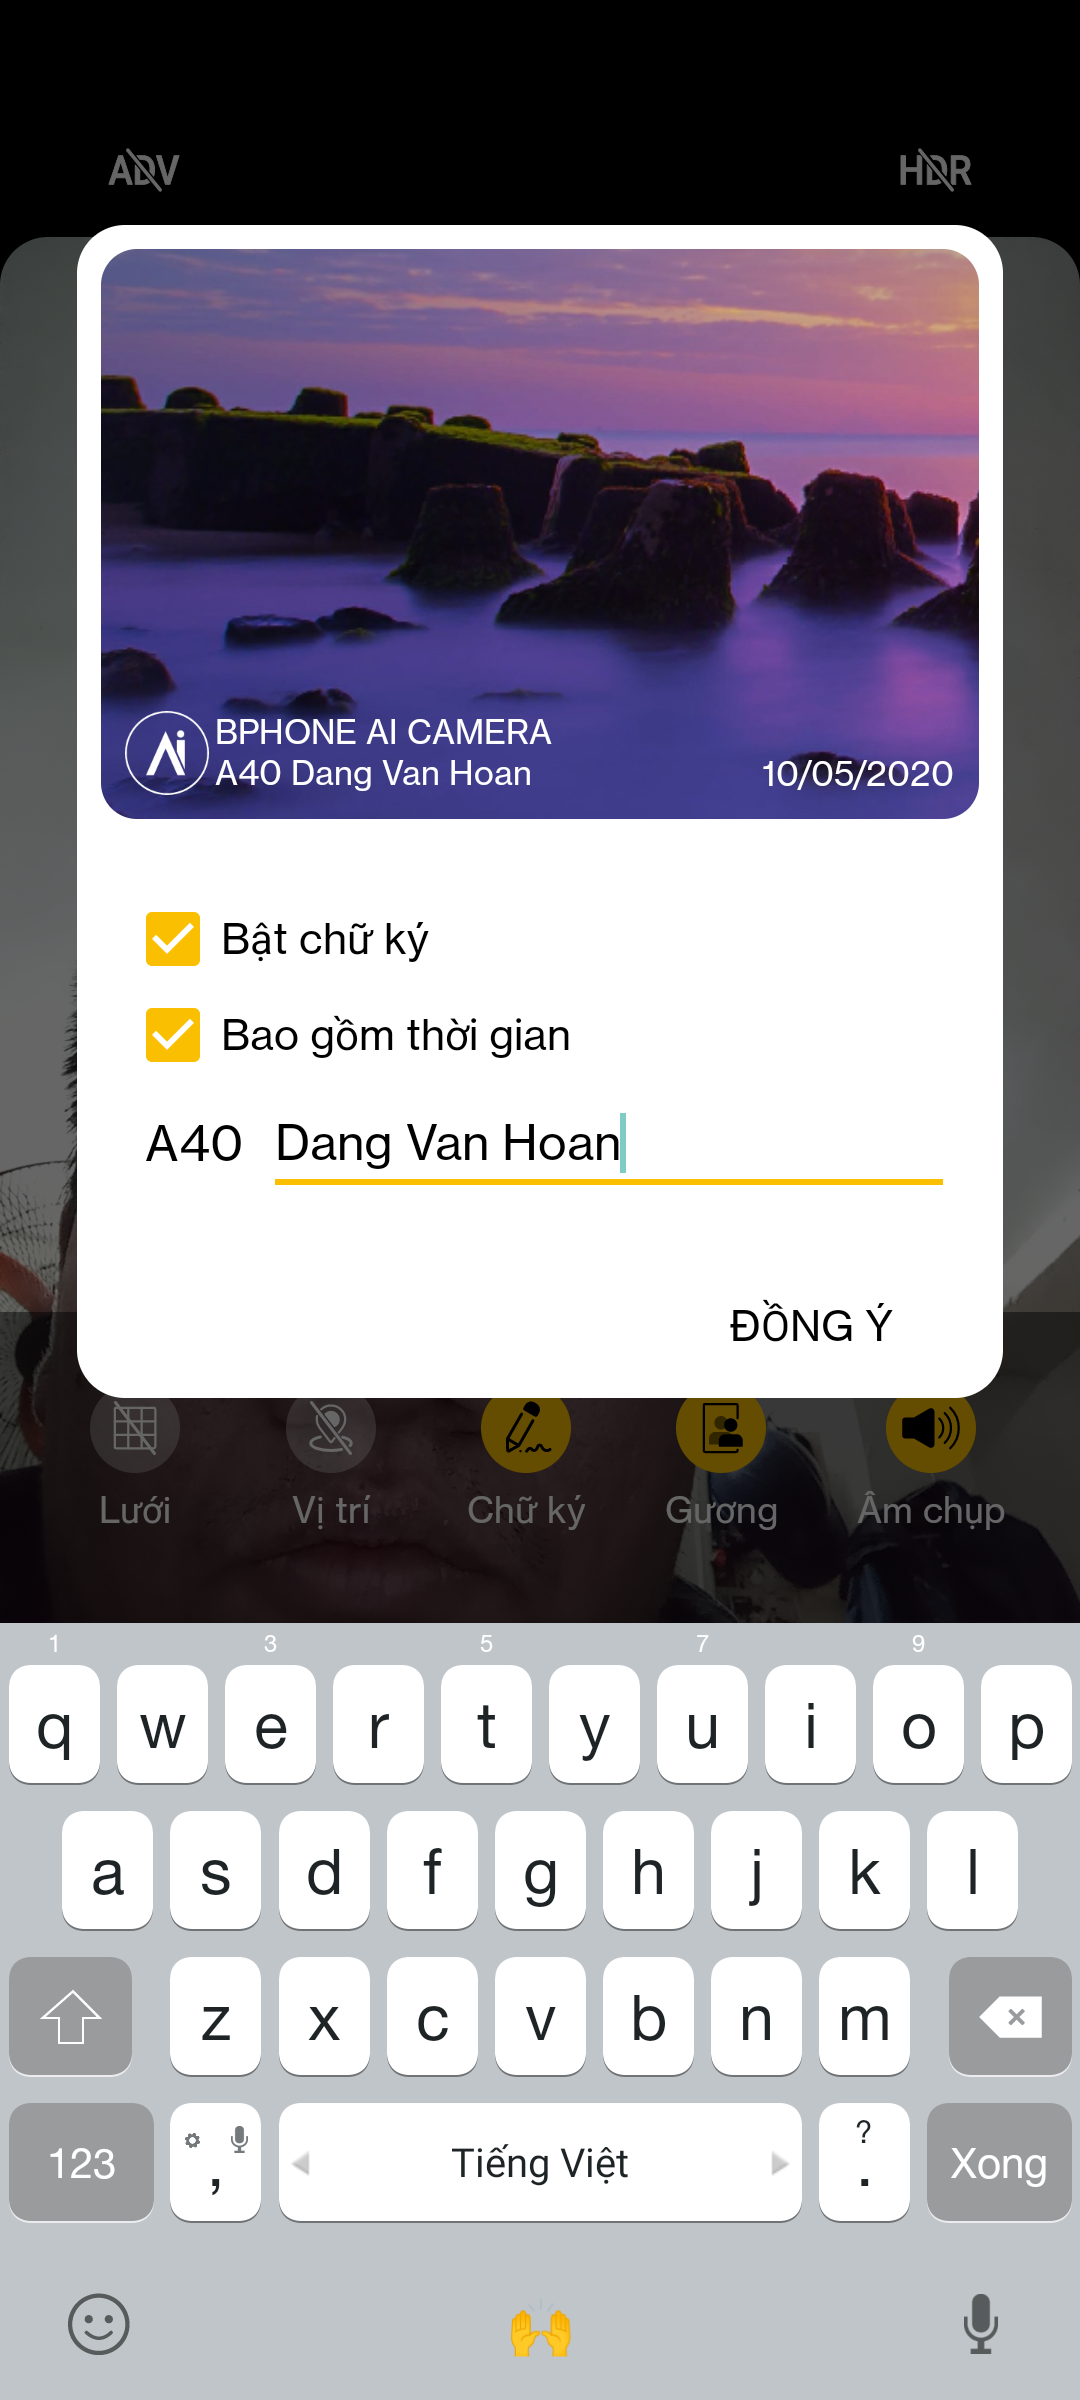 Mở hộp Bphone A60: “Smartphone quốc dân” mới của Bkav có gì?